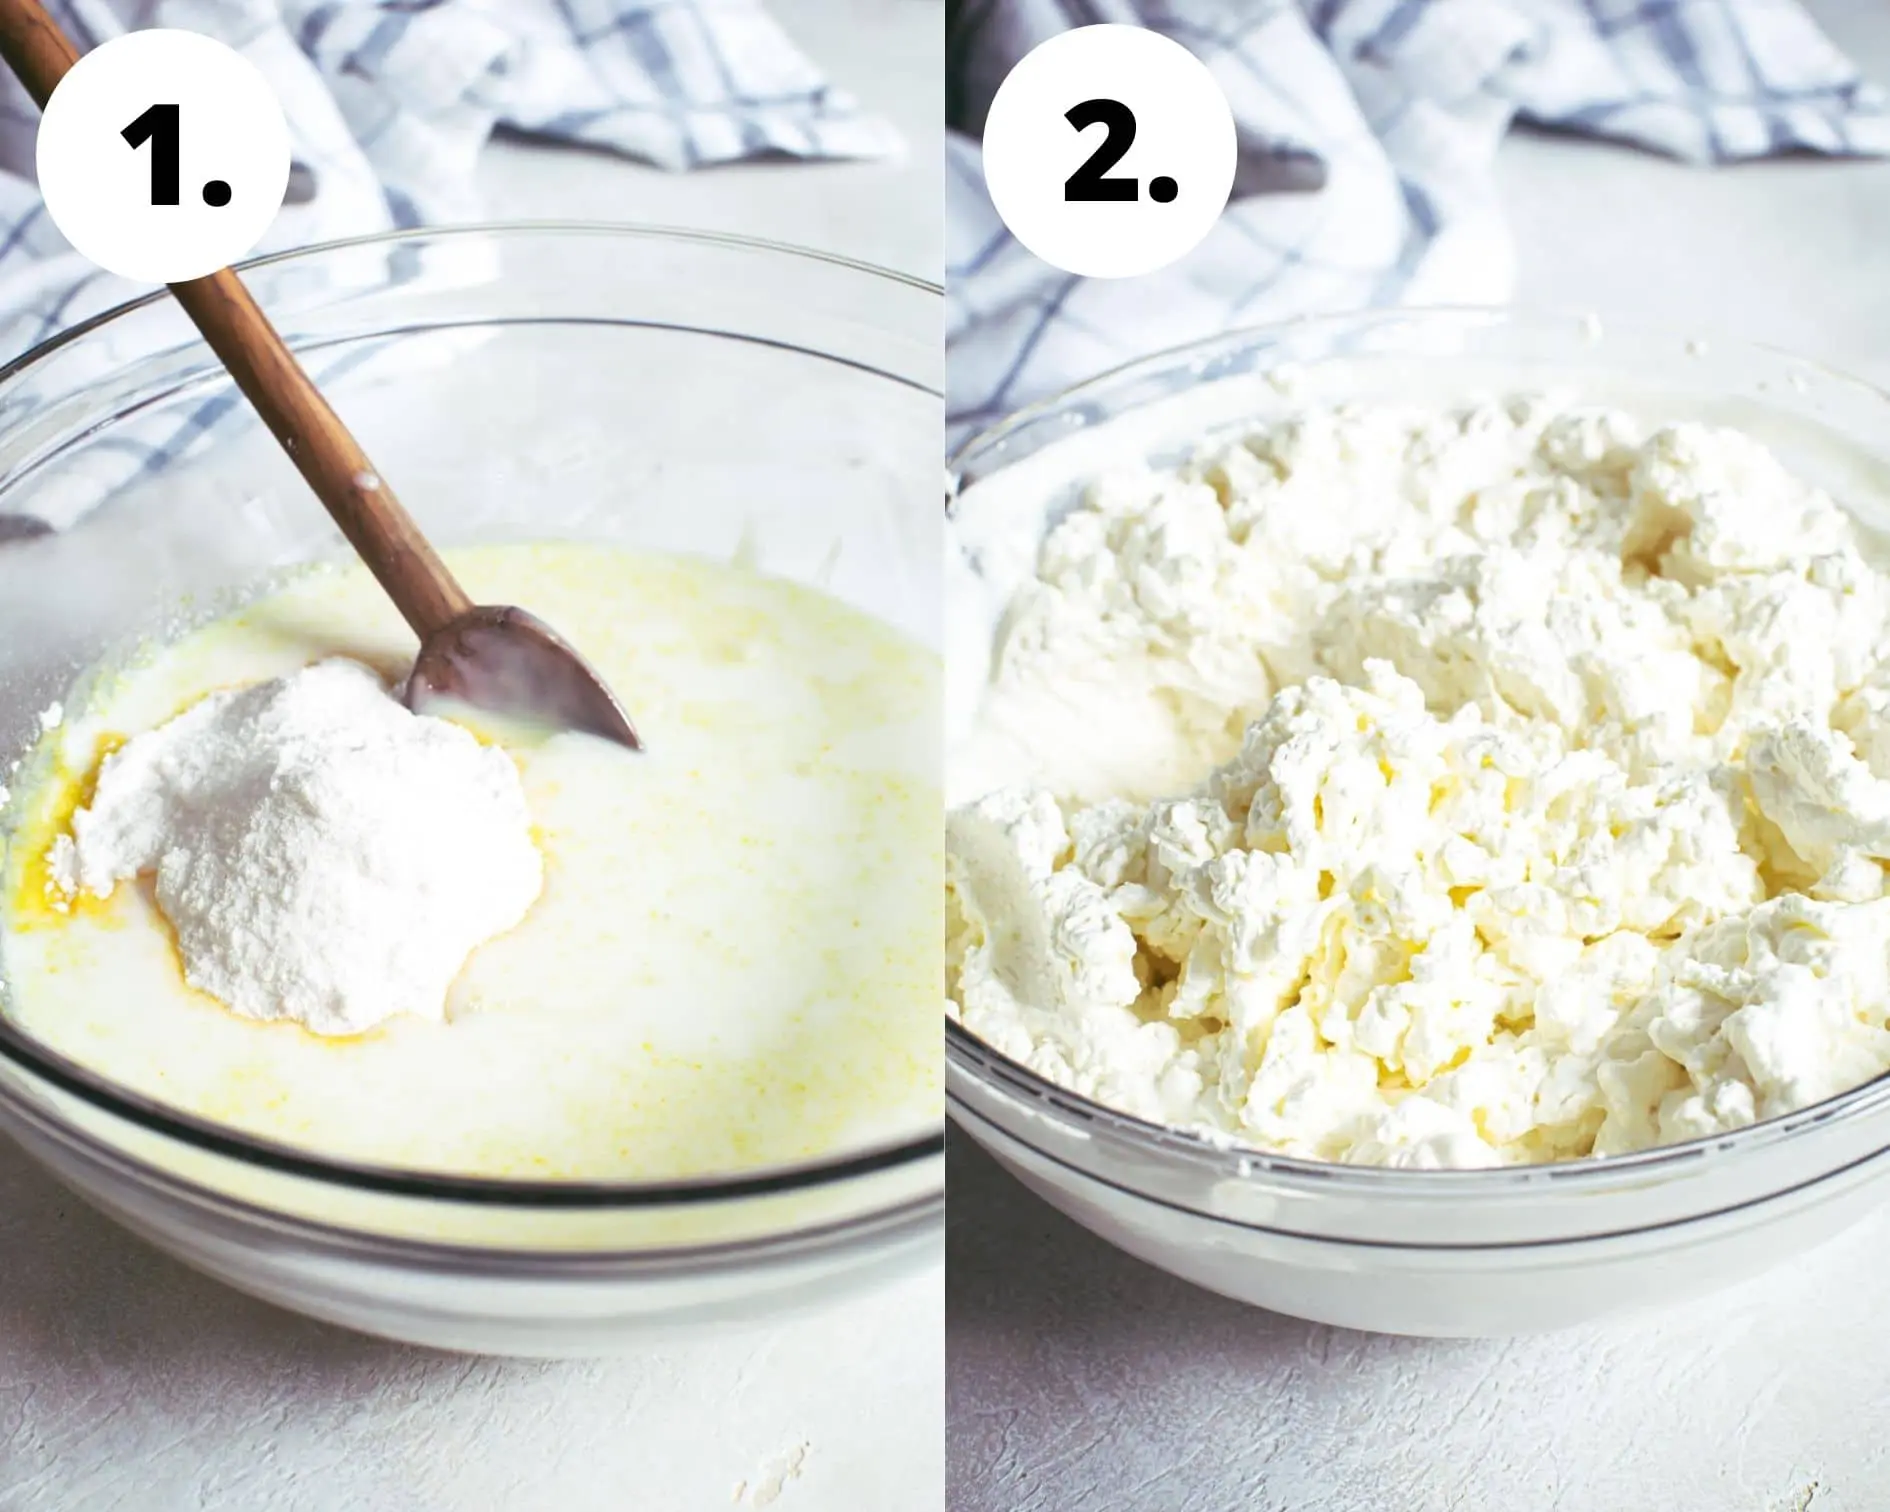 Banana pudding trifle process steps 1 and 2.